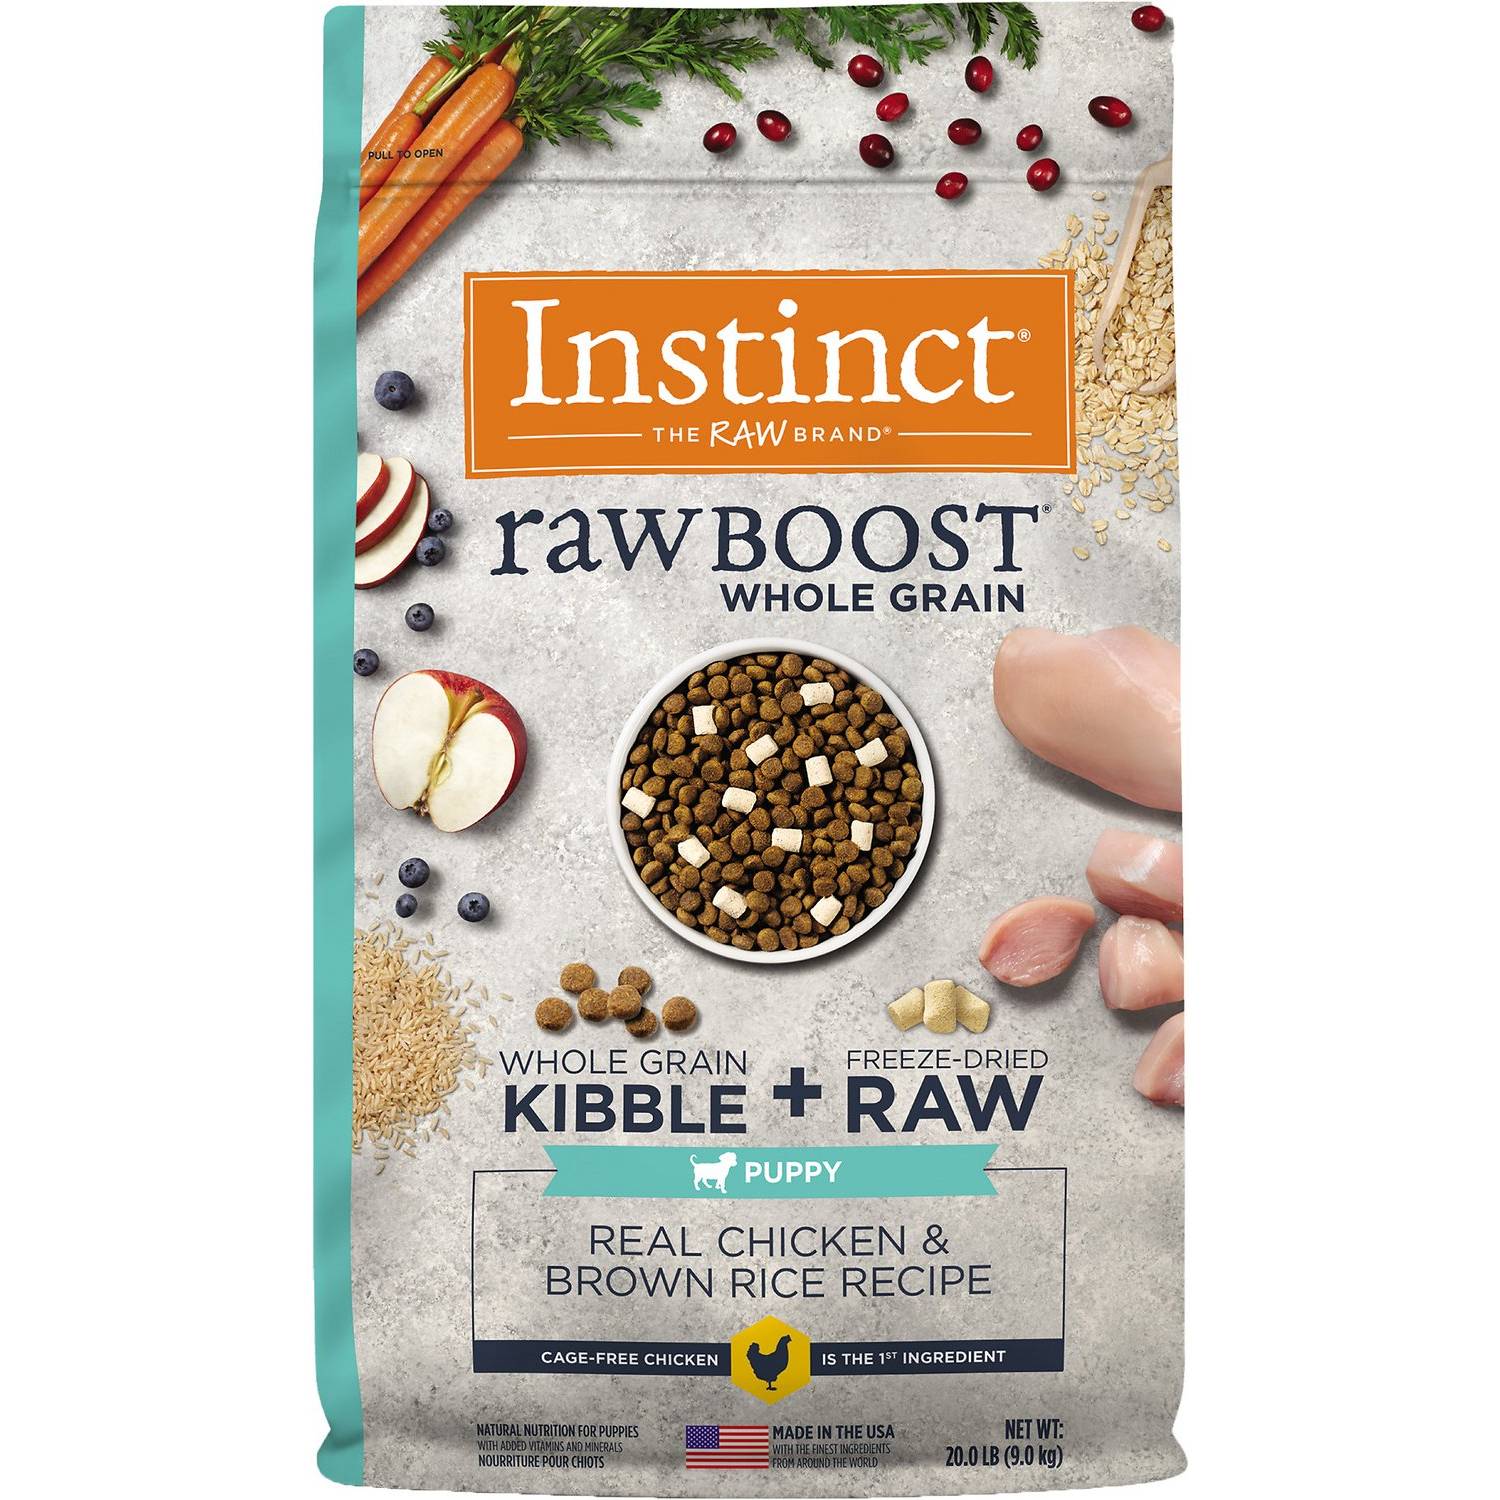 Instinct Raw Boost Puppy